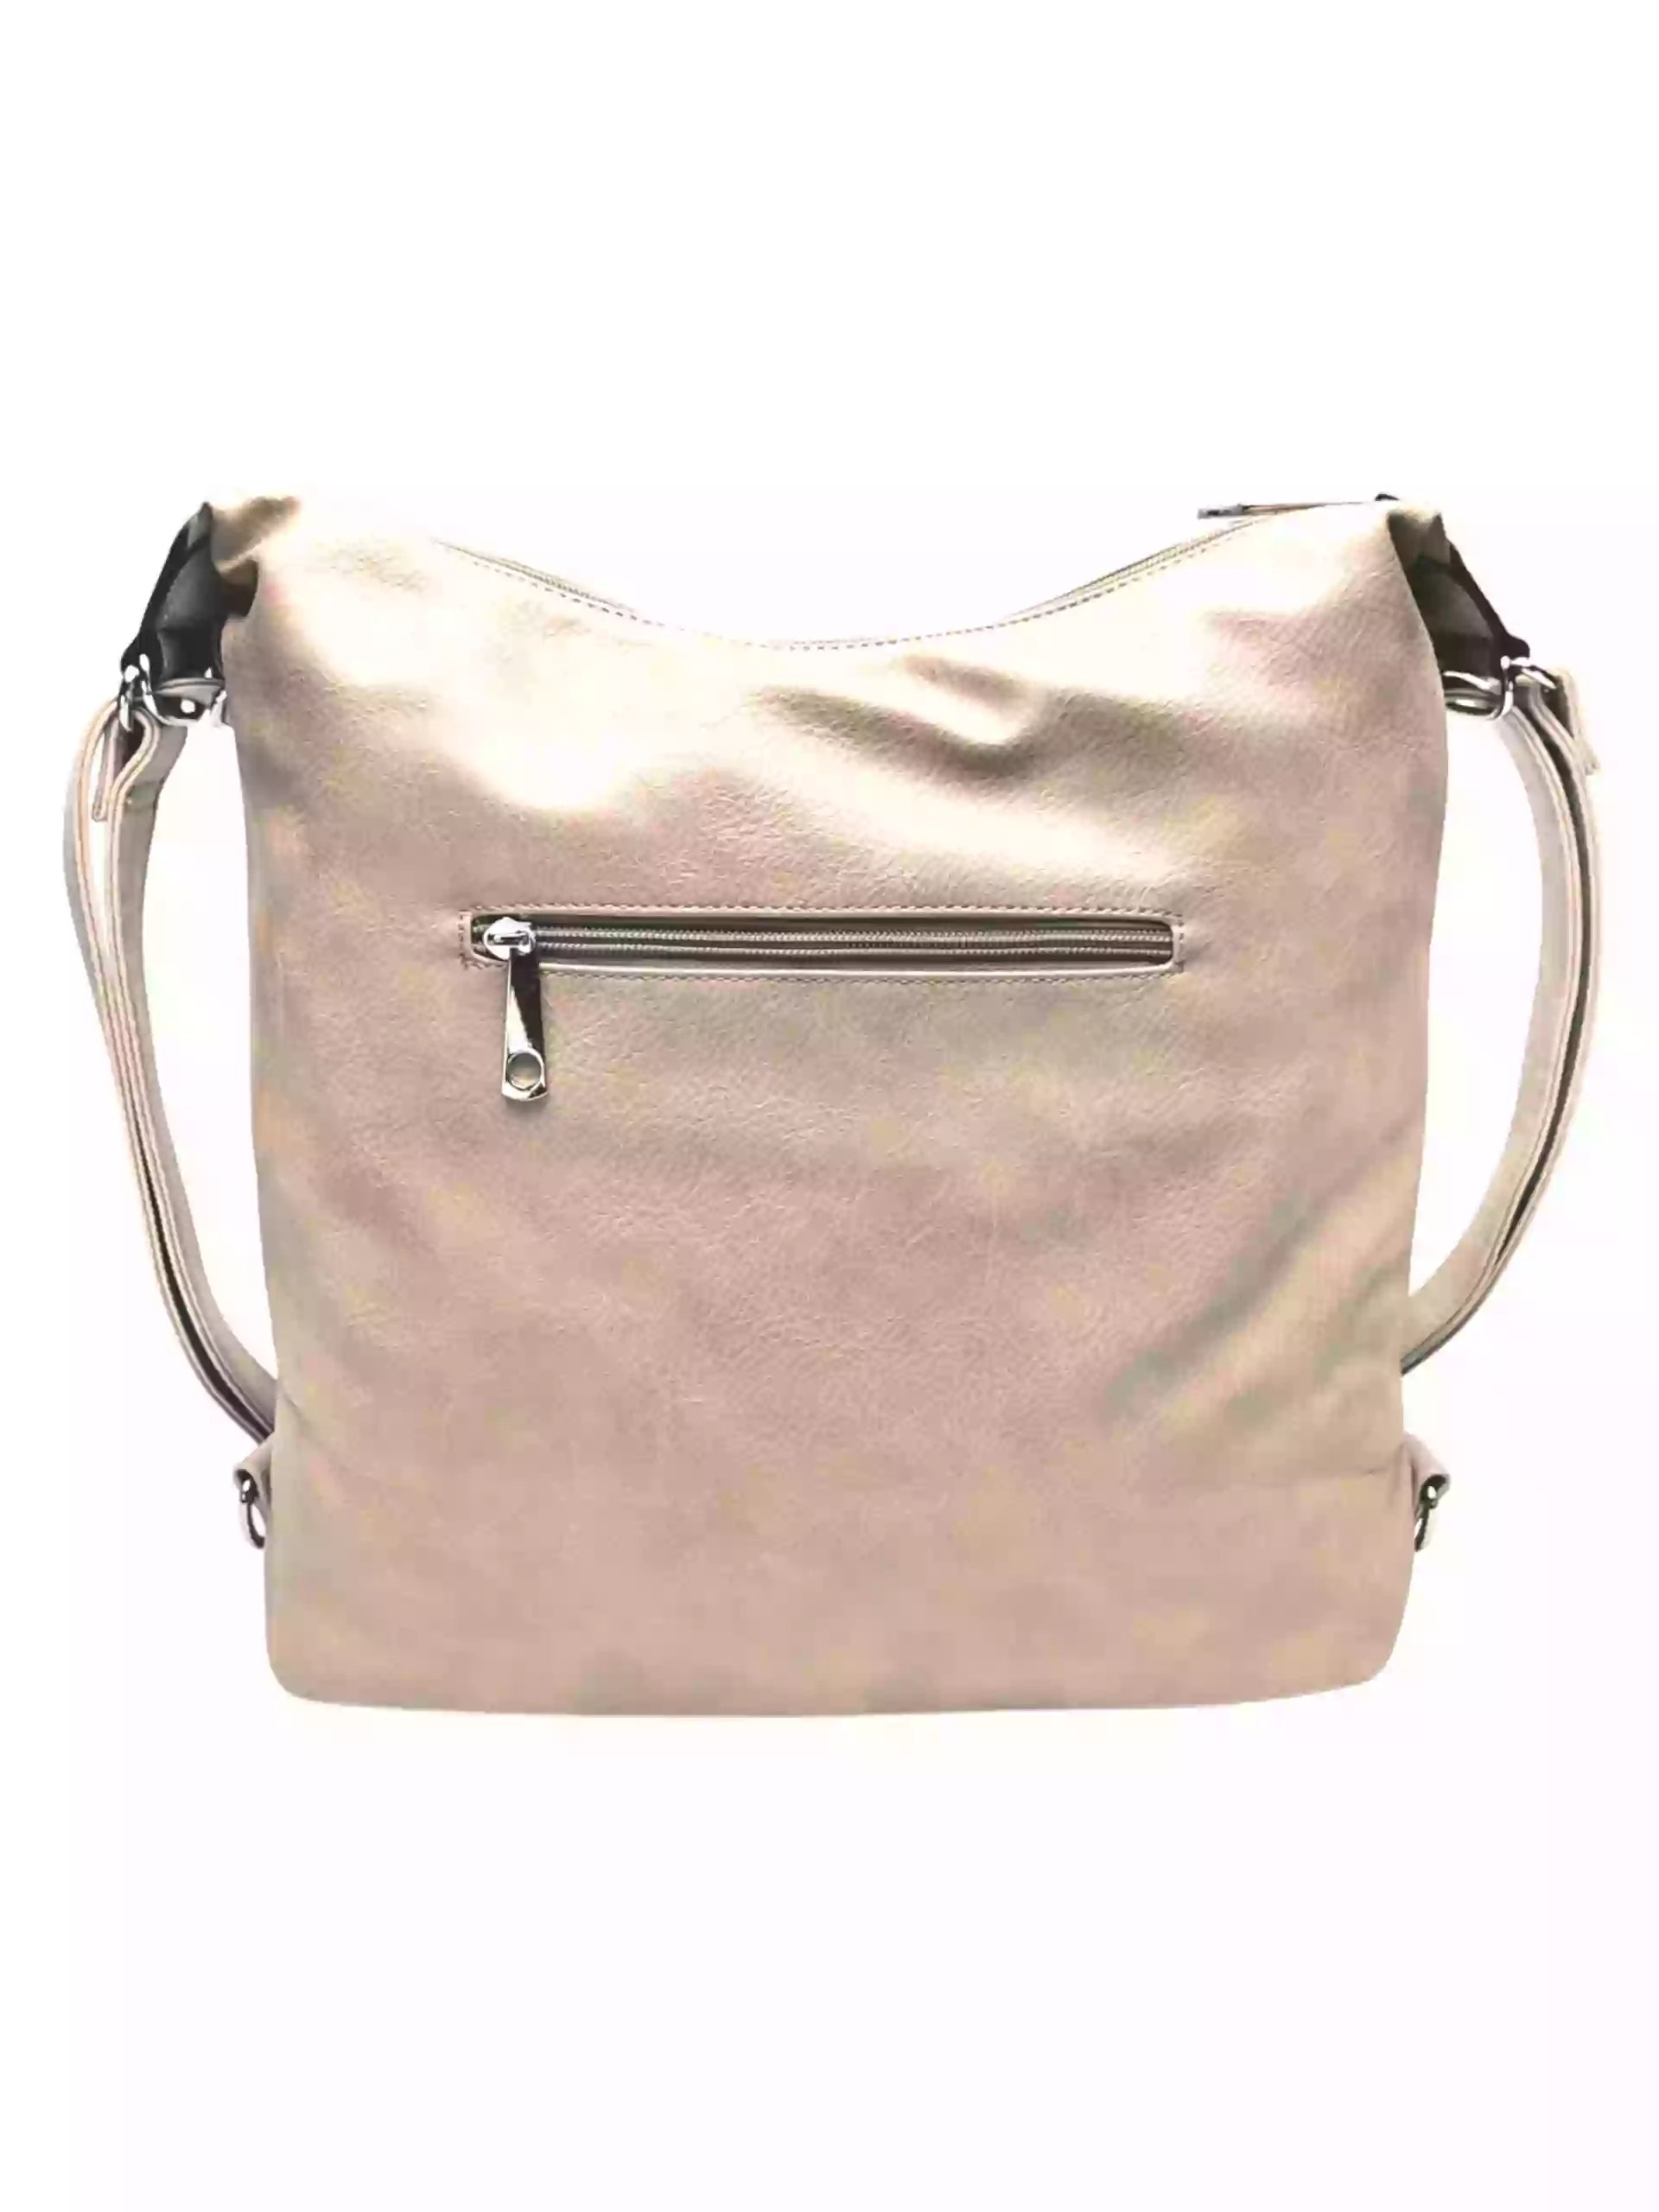 Velký světle hnědý kabelko-batoh s šikmou kapsou, Tapple, H18077N+, zadní strana kabelko-batohu 2v1